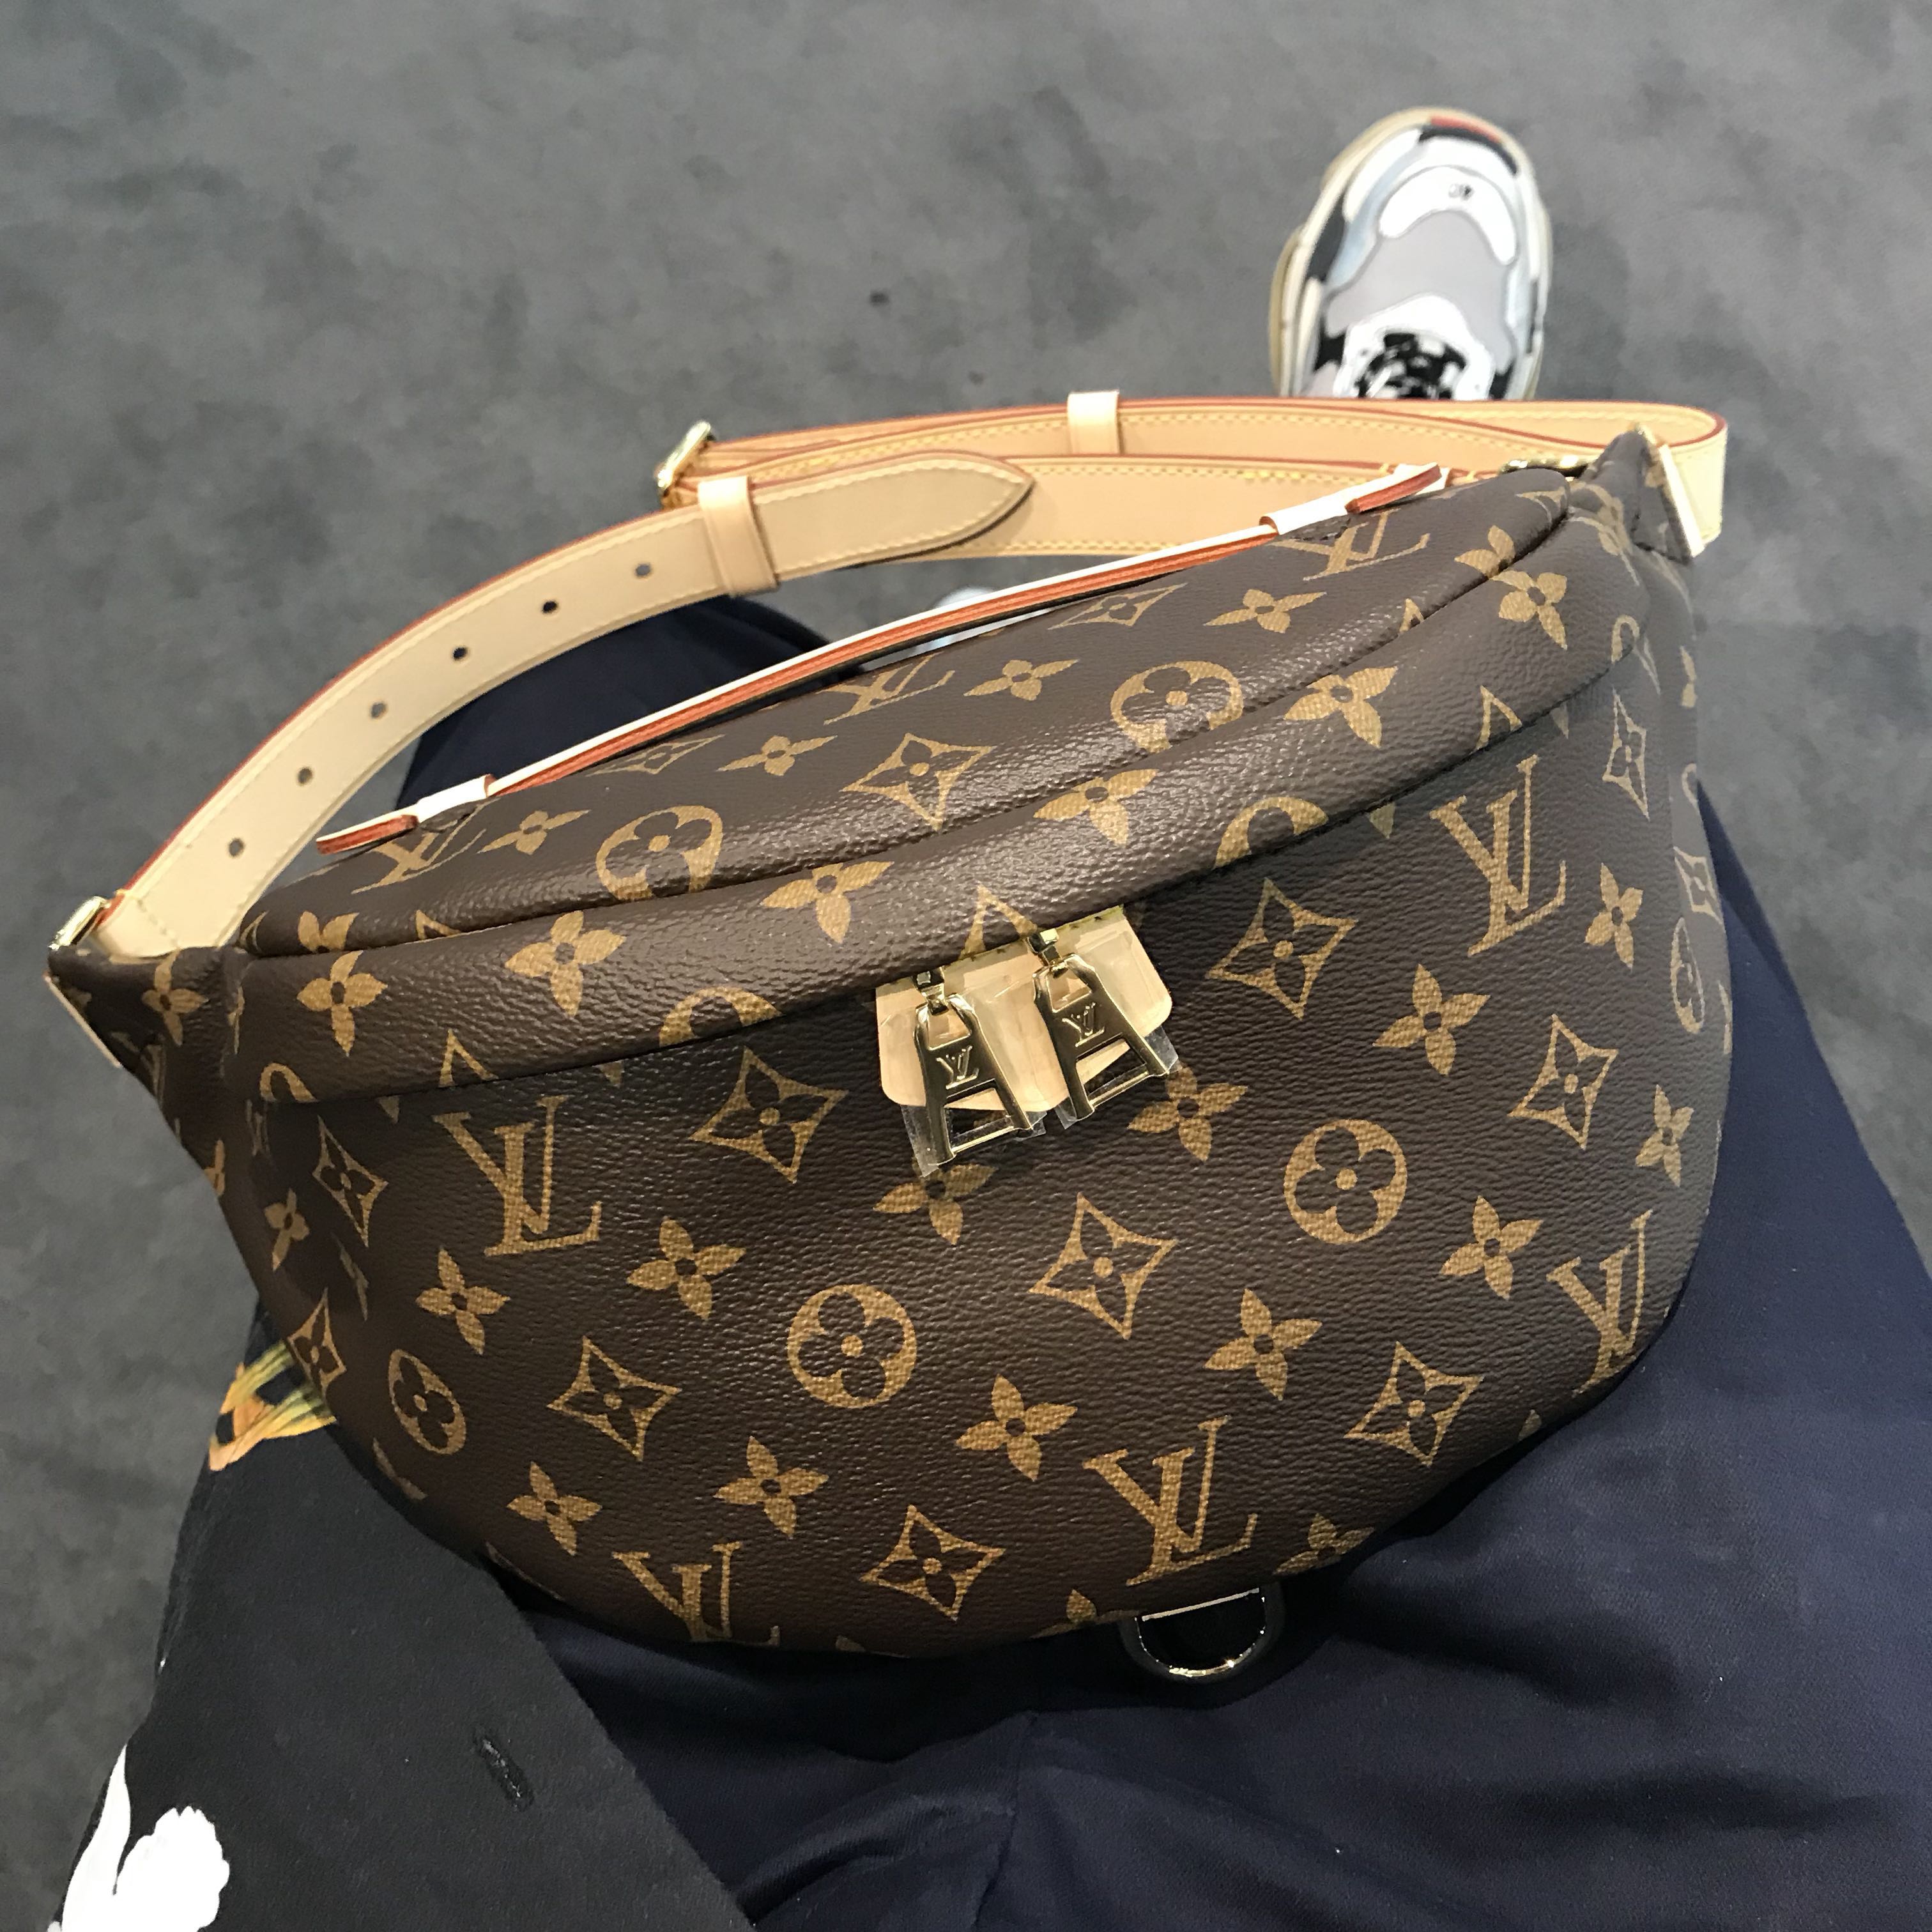 Bag > Louis Vuitton Christopher Bumbag